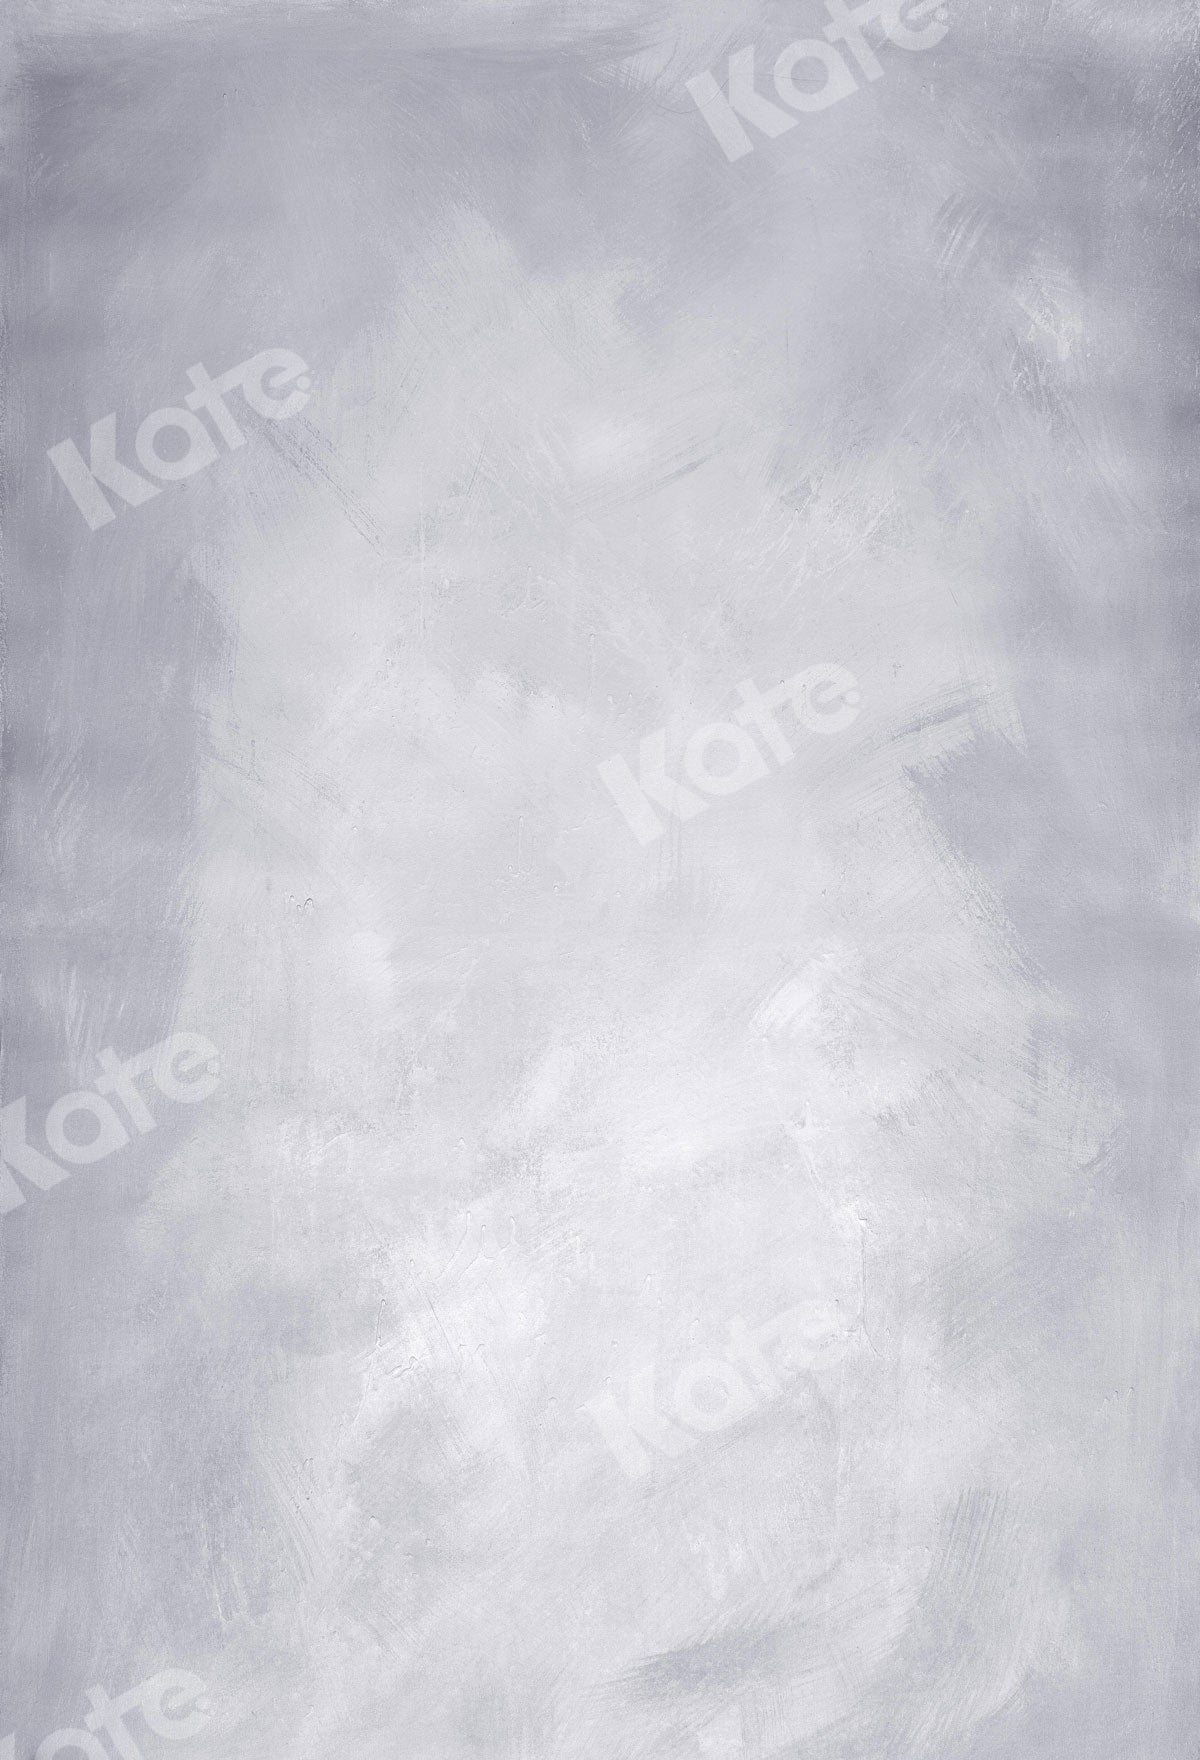 Kate グレーブルーホワイト抽象的なテクスチャ背景布